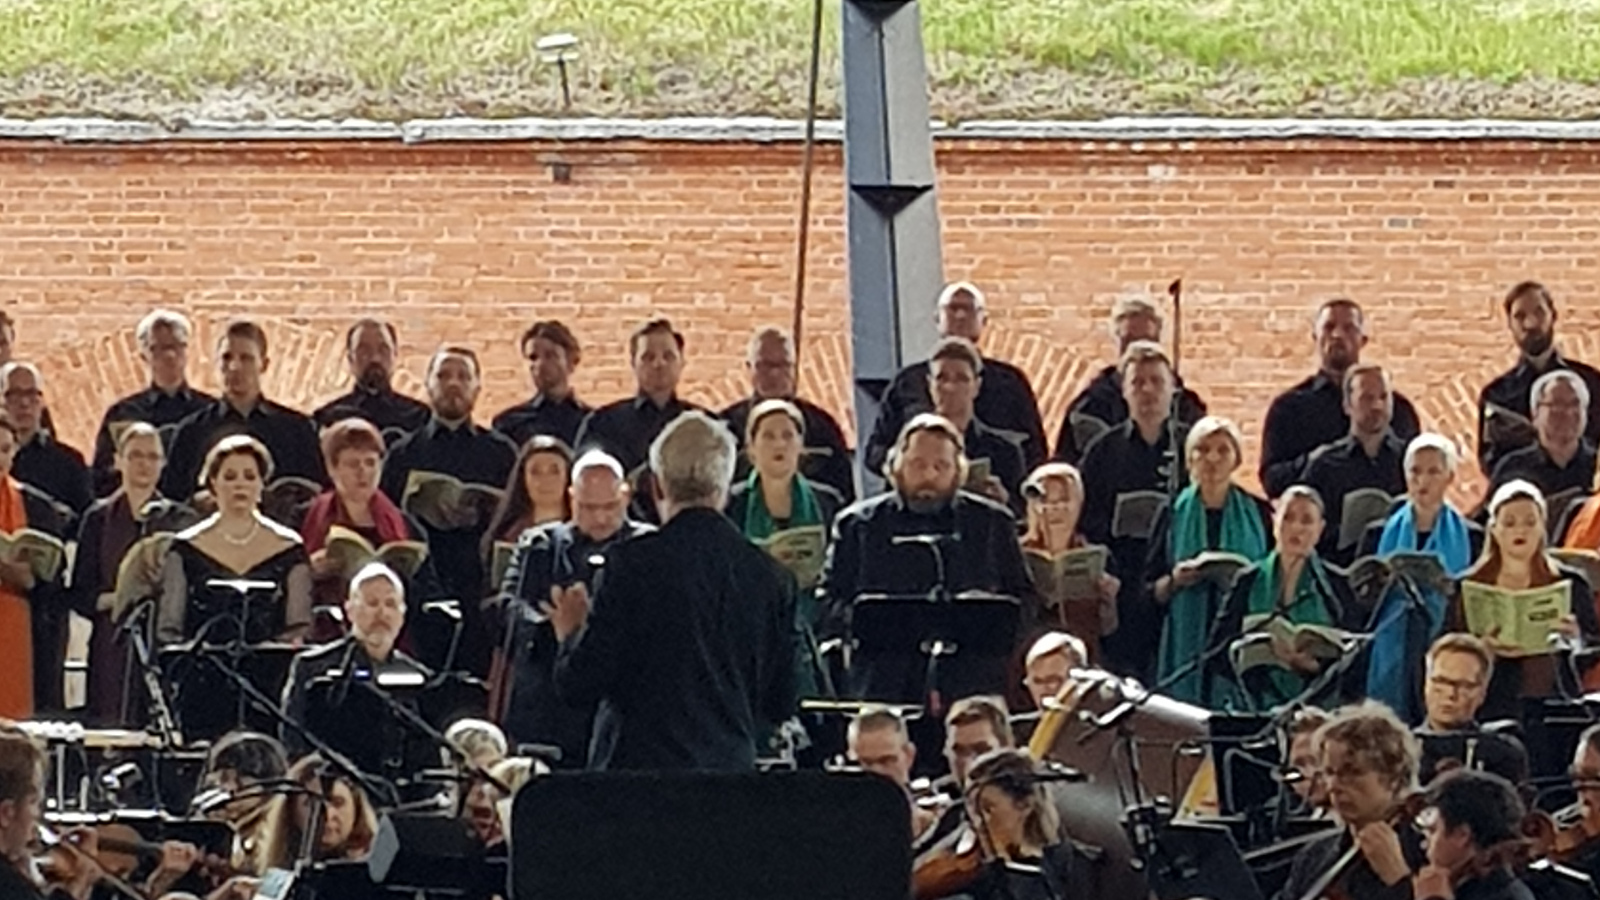 Kuvassa on Hannu Lintu selin johtamassa orkesteria ja hänen sivuillaan on soittajia. Edessä on vasemmalla solistit vasemmalla sopraano Silja Aalto, tenori Mika Pohjonen ja basso Matti Turunen. Taustalla on kuorolaulajia sekä tiilimuuria.